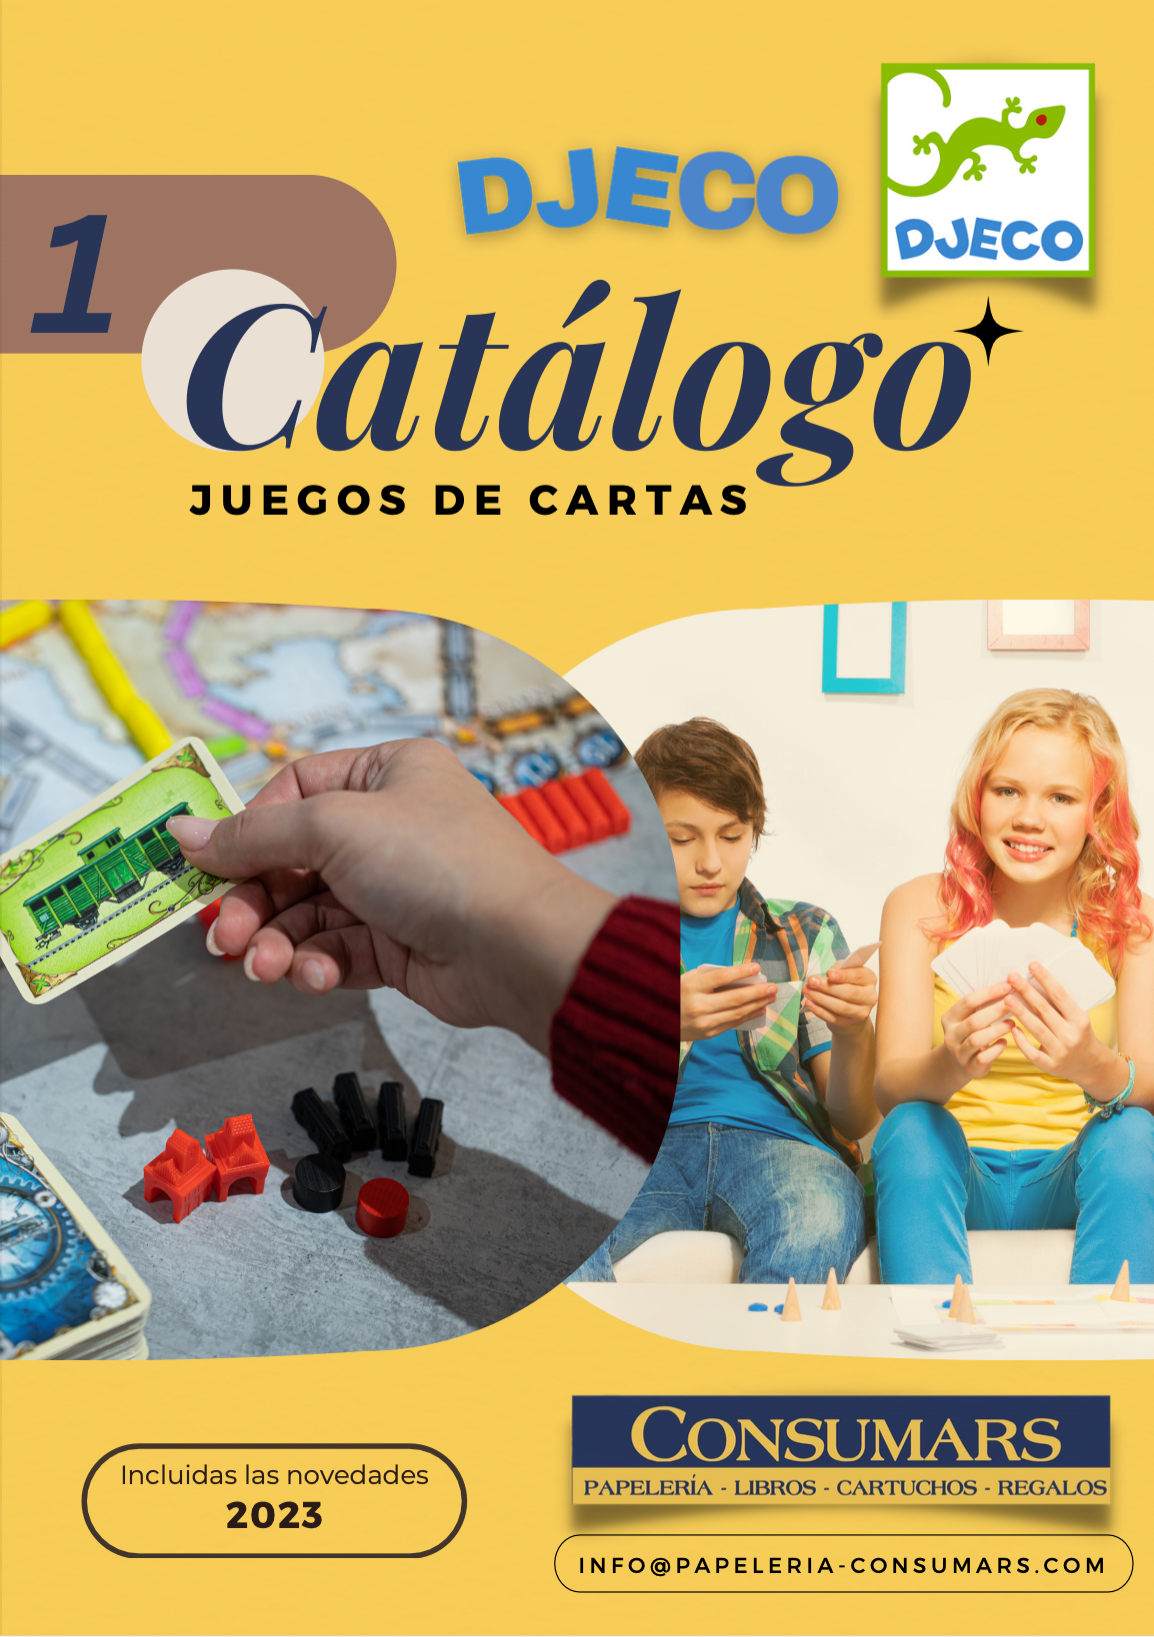 Catálogo Djeco Juegos de Cartas.png